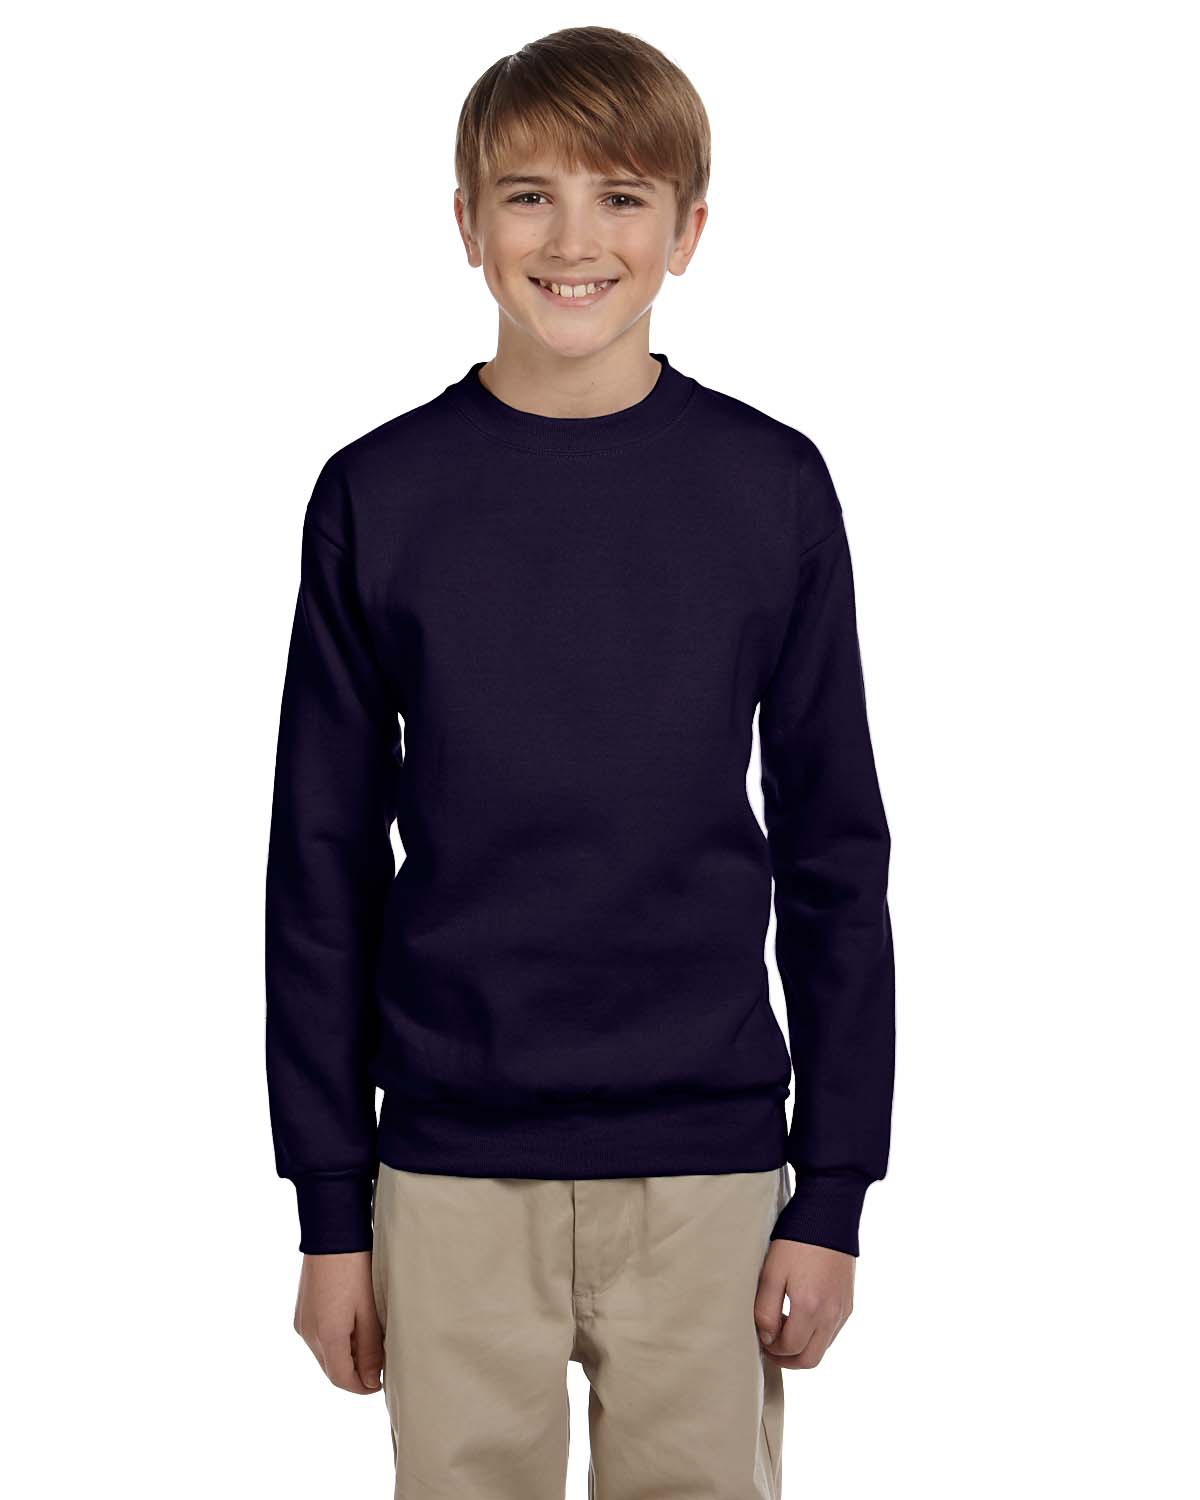 Hanes P360 - Youth EcoSmart® Crewneck Sweatshirt $8.70 - Sweatshirts